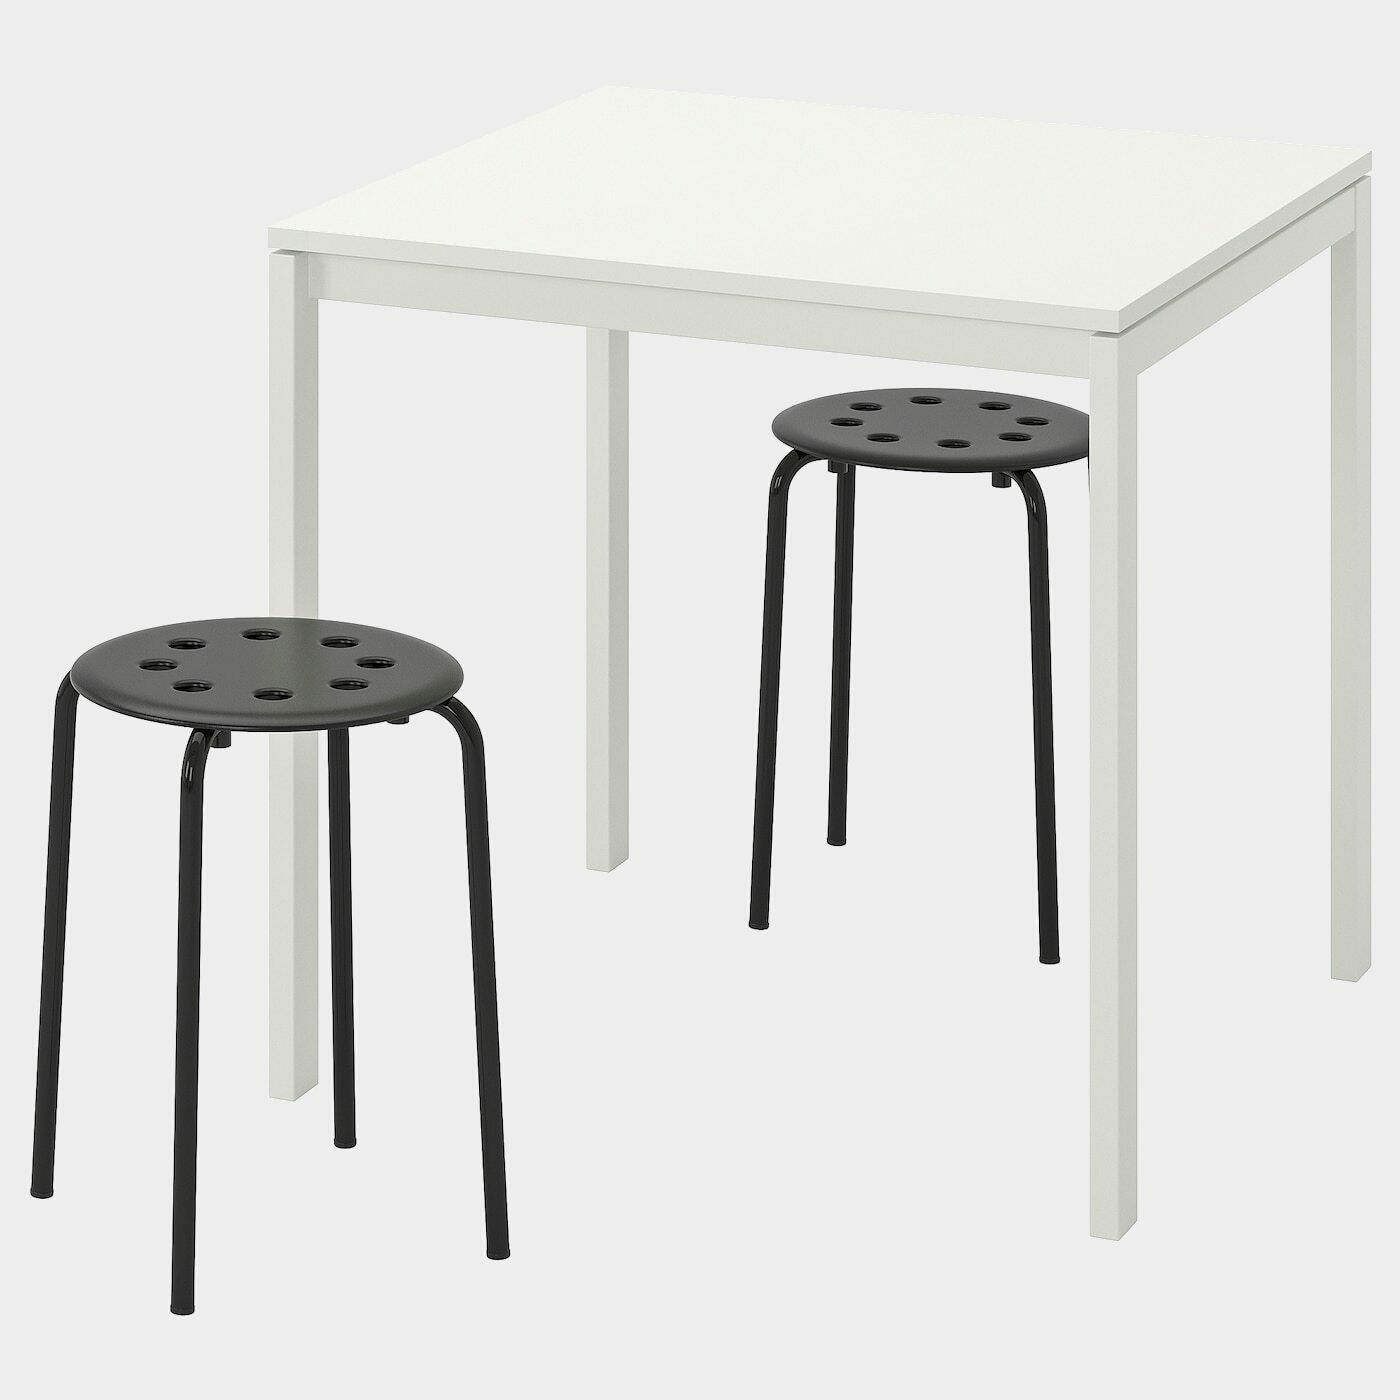 MELLTORP / MARIUS Tisch + 2 Hocker  - Essplatzgruppe - Möbel Ideen für dein Zuhause von Home Trends. Möbel Trends von Social Media Influencer für dein Skandi Zuhause.